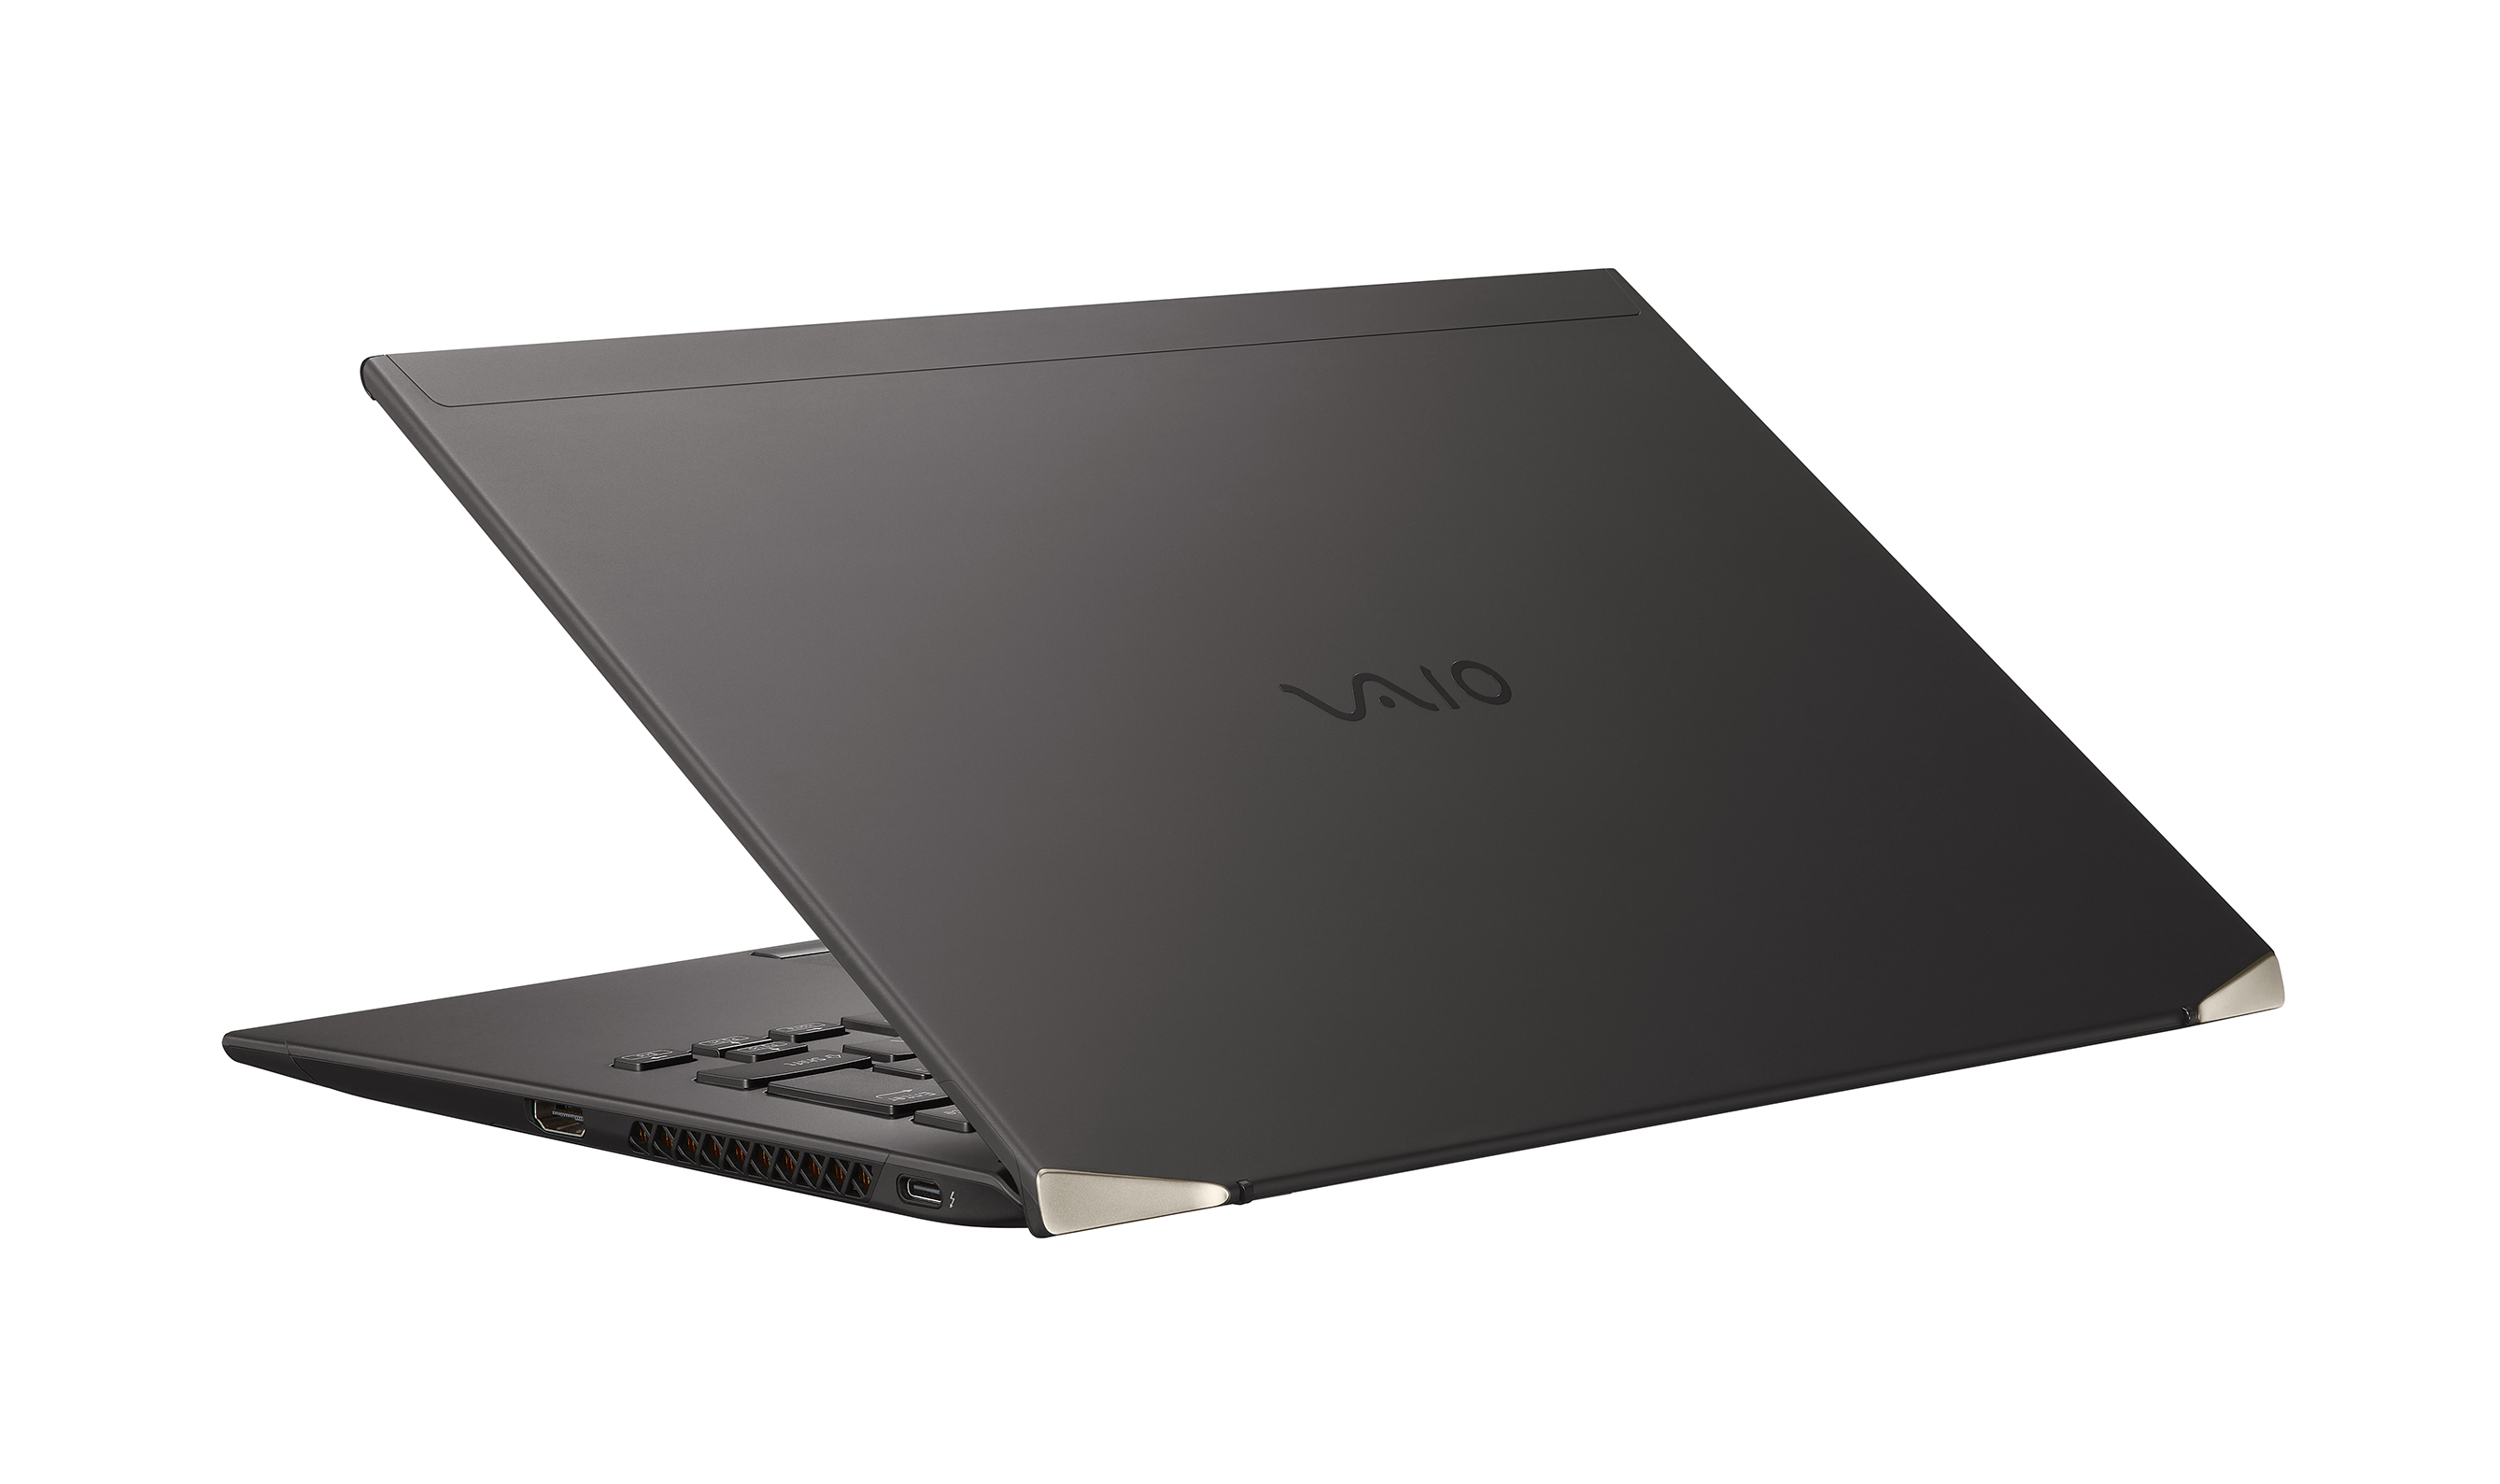 「VAIO Z」が本日発売。VAIO最高クラスの高性能モバイルノート ...